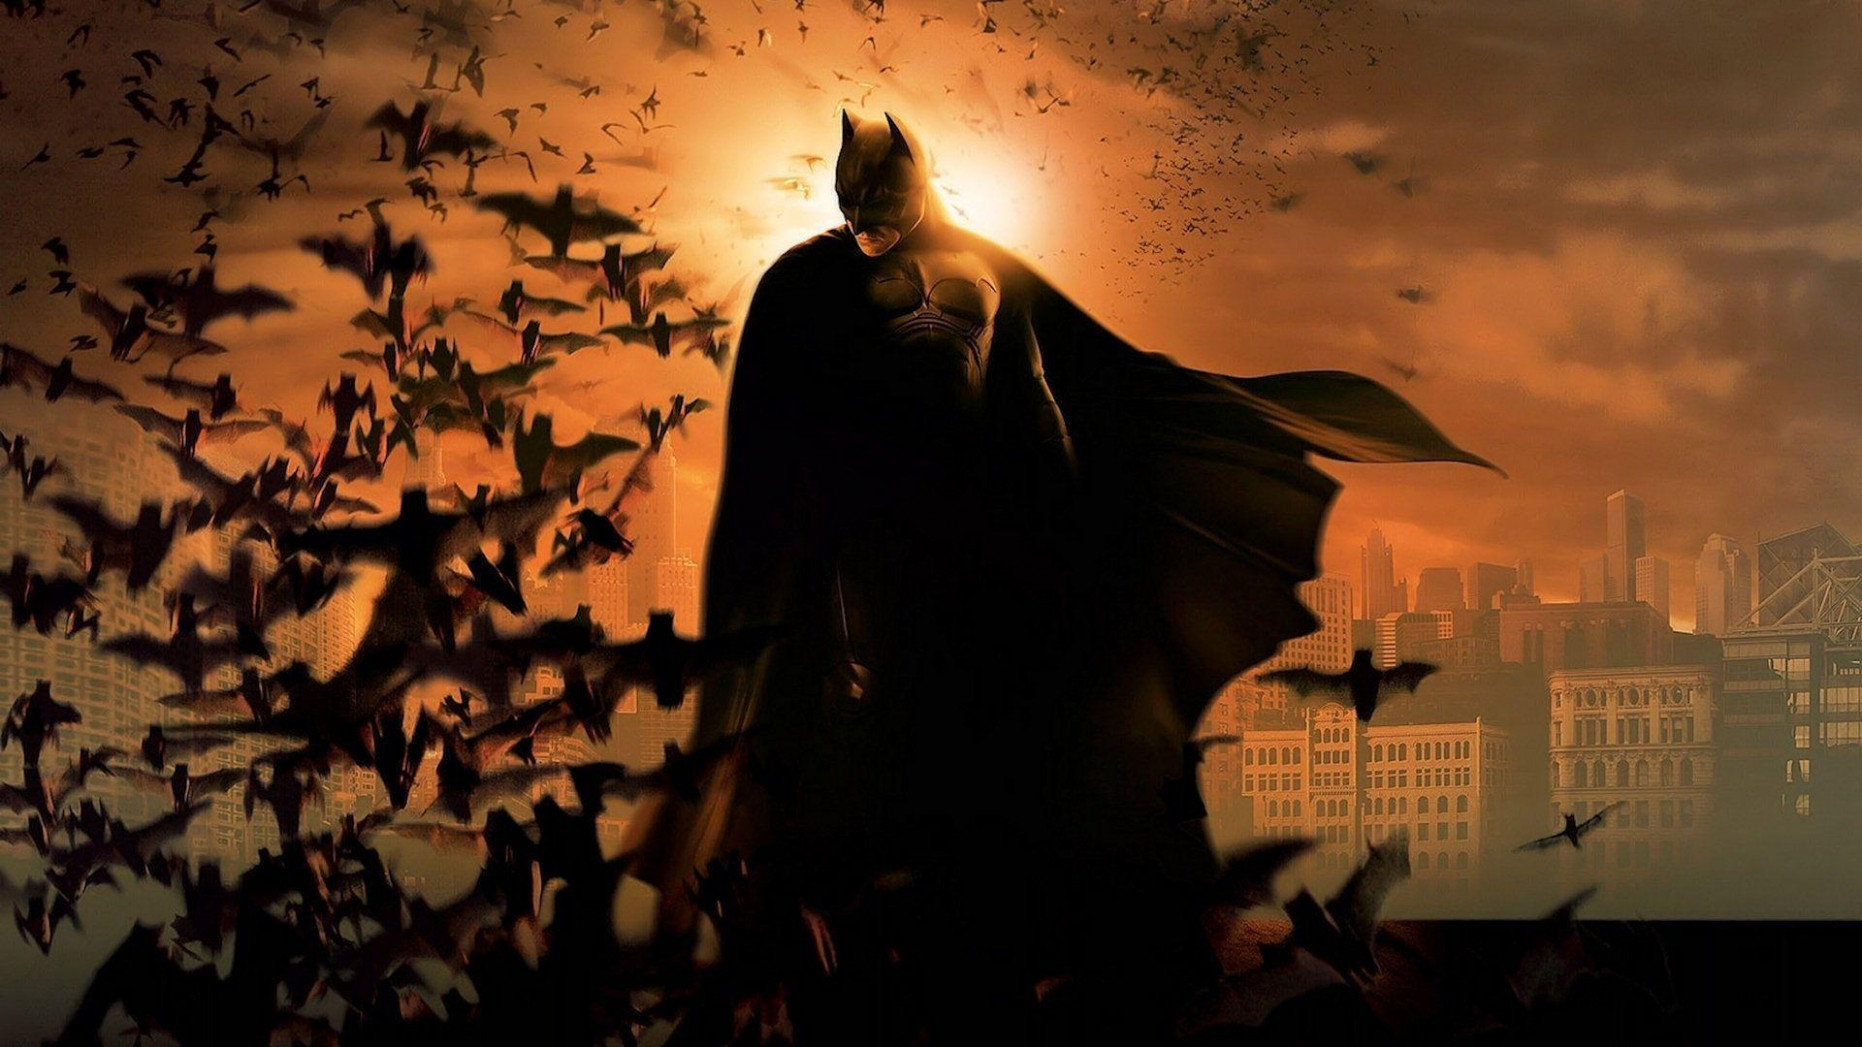 Batman Wallpapers - Batman Wallpaper Hd - HD Wallpaper 